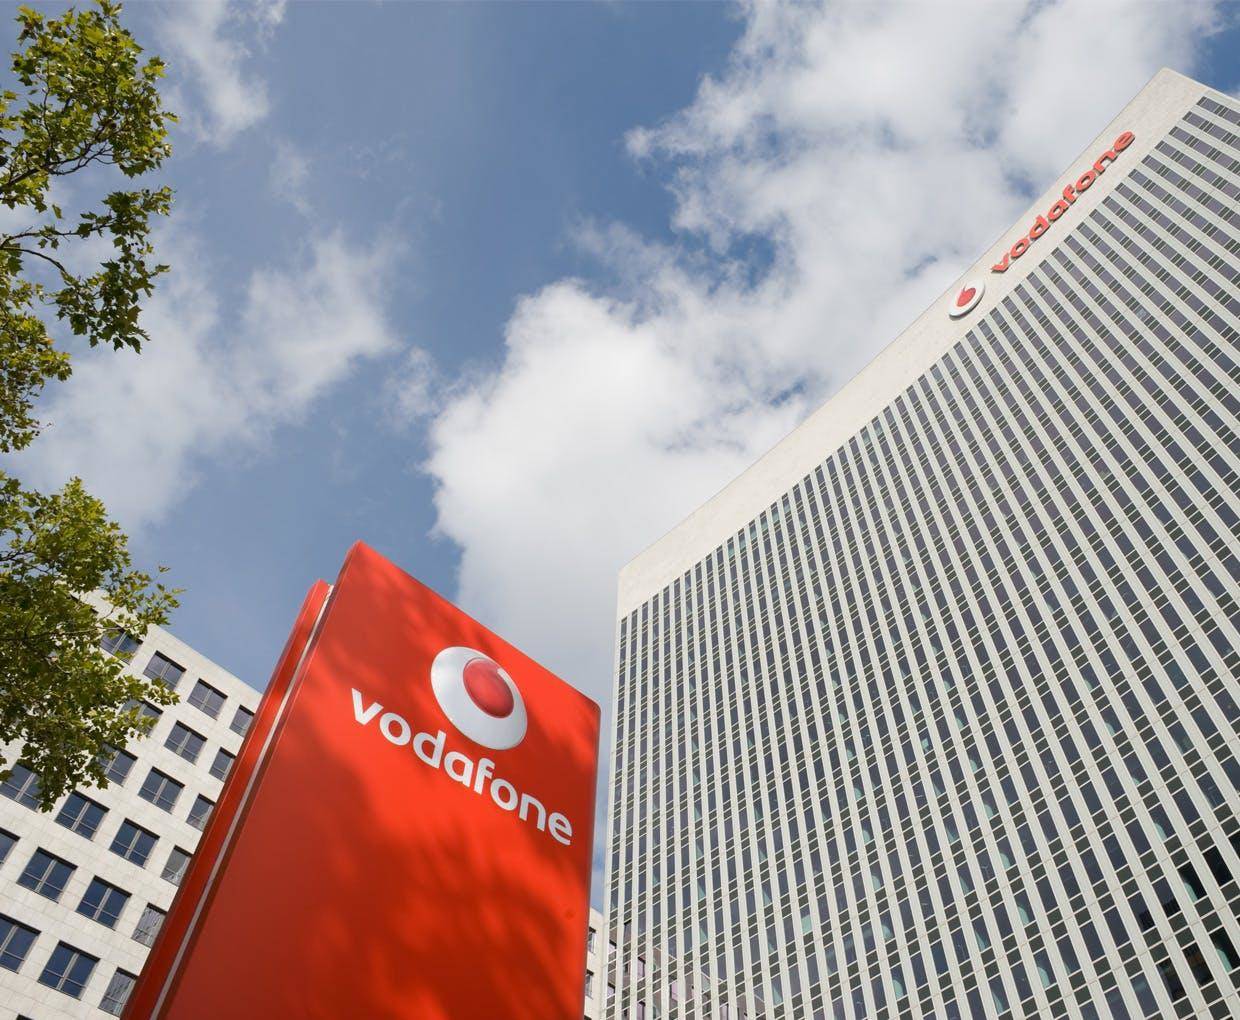 Vodafone ने अपने दो प्लान में किया बदलाव, जानें इनके बारे में 